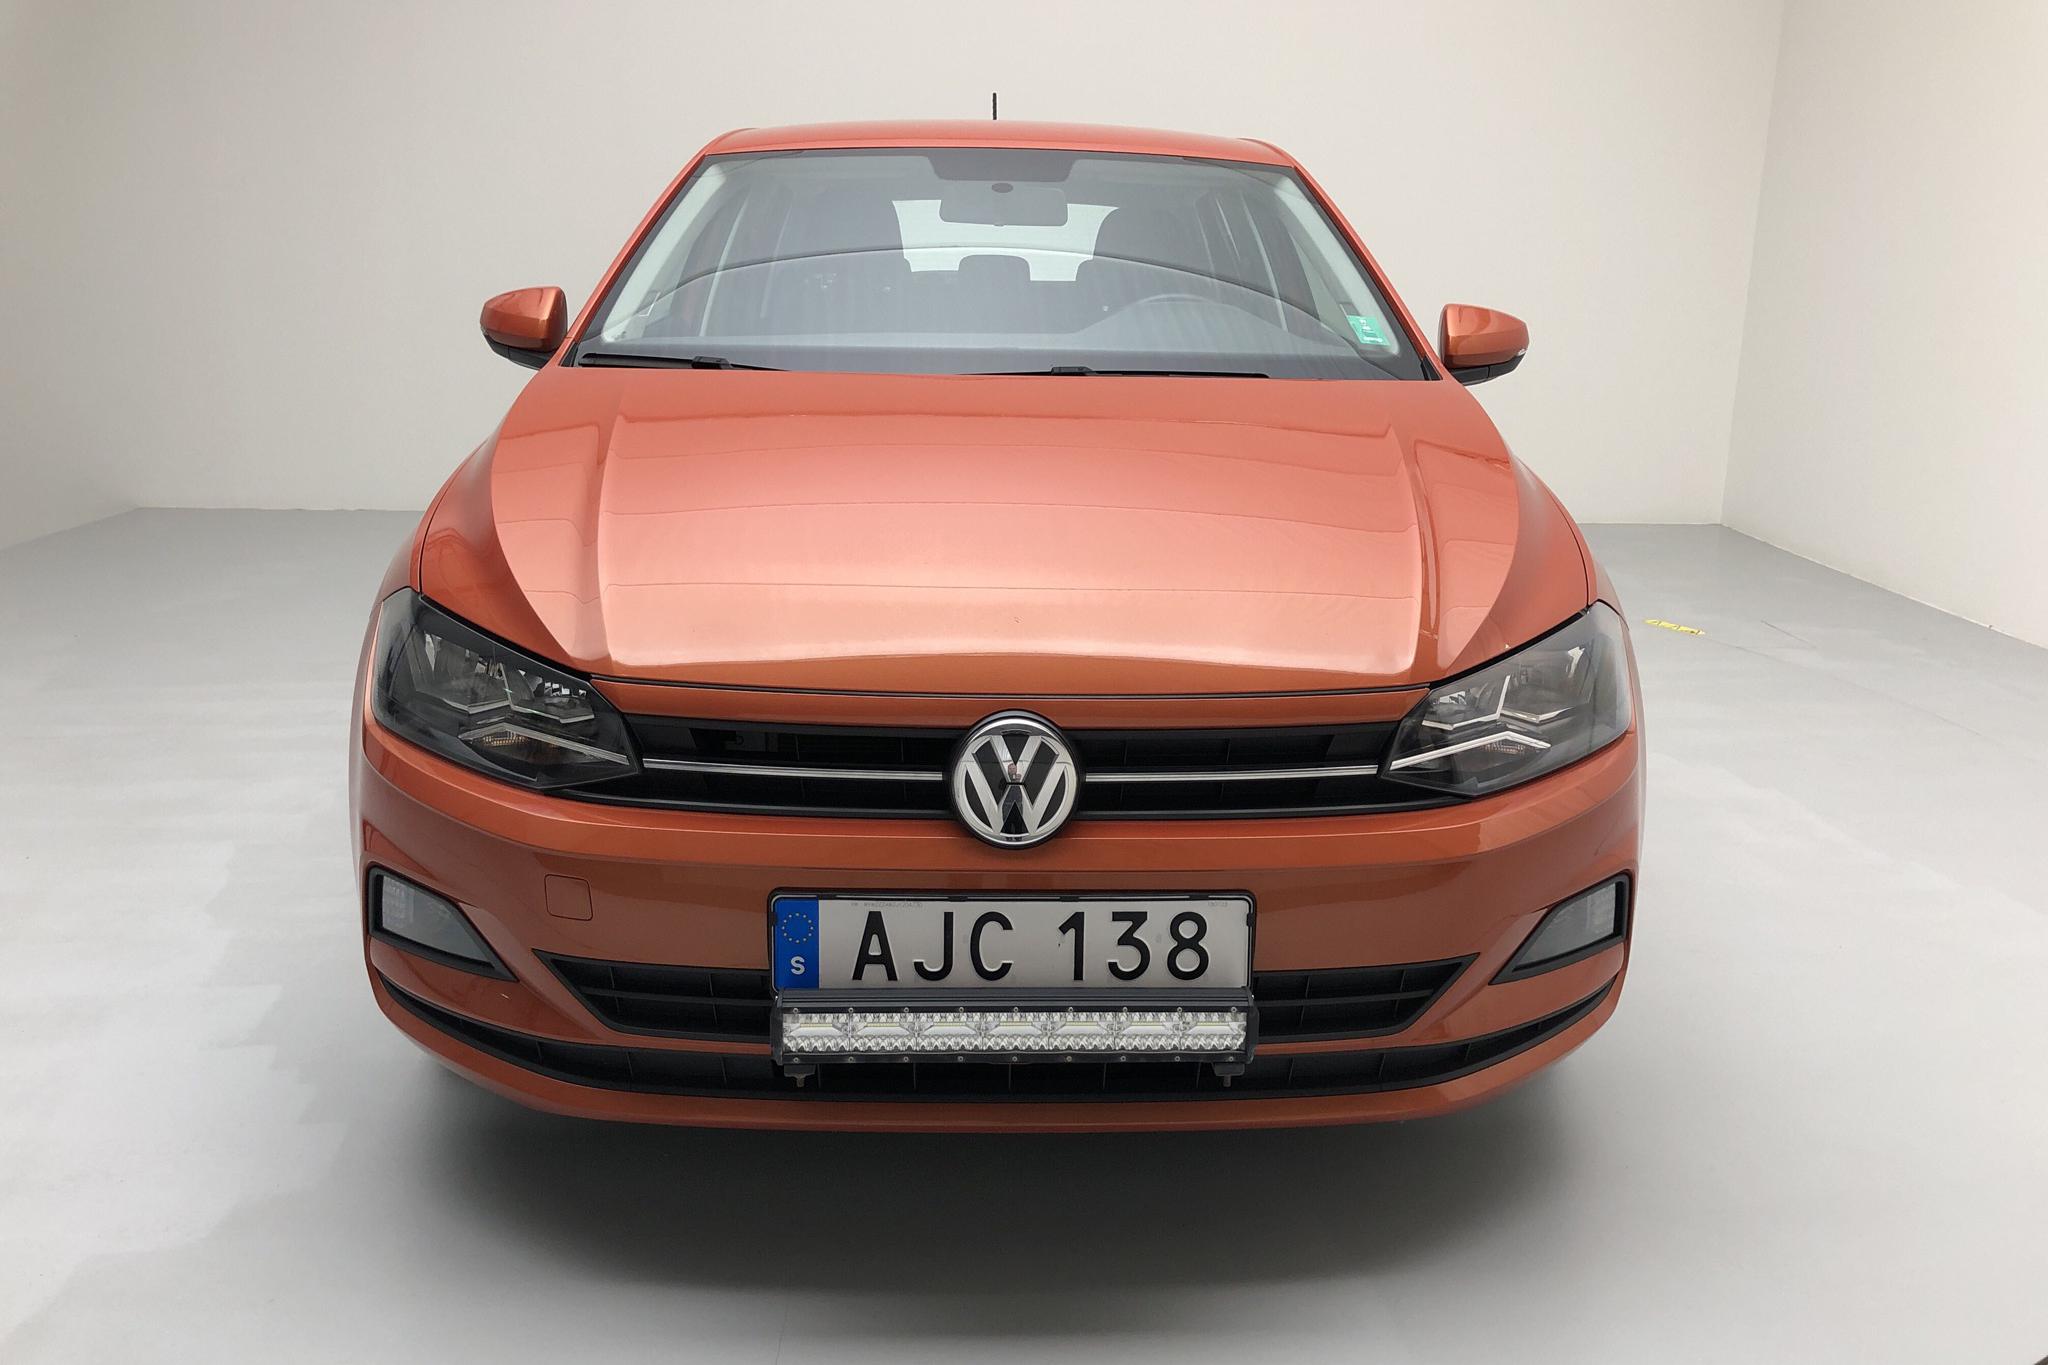 VW Polo 1.0 TSI 5dr (95hk) - 46 900 km - Manual - orange - 2018